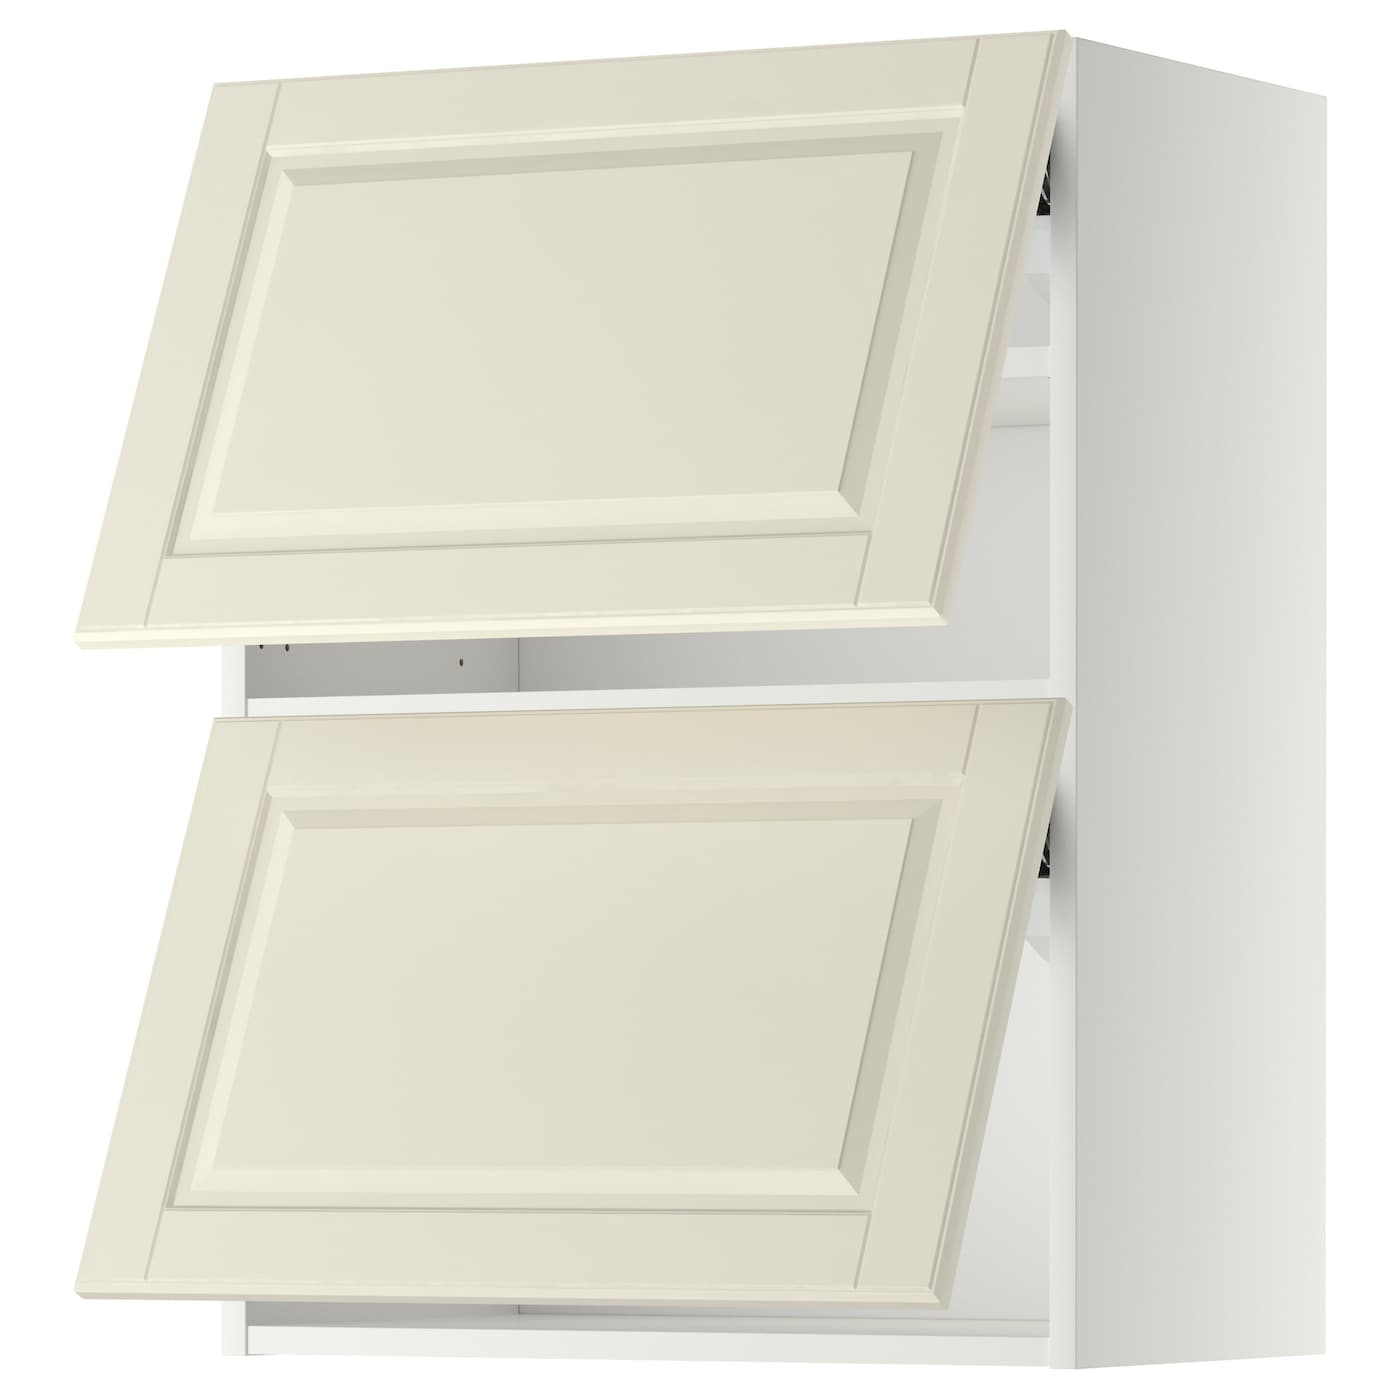 Навесной шкаф - METOD IKEA/ МЕТОД ИКЕА, 80х60 см, белый/кремовый